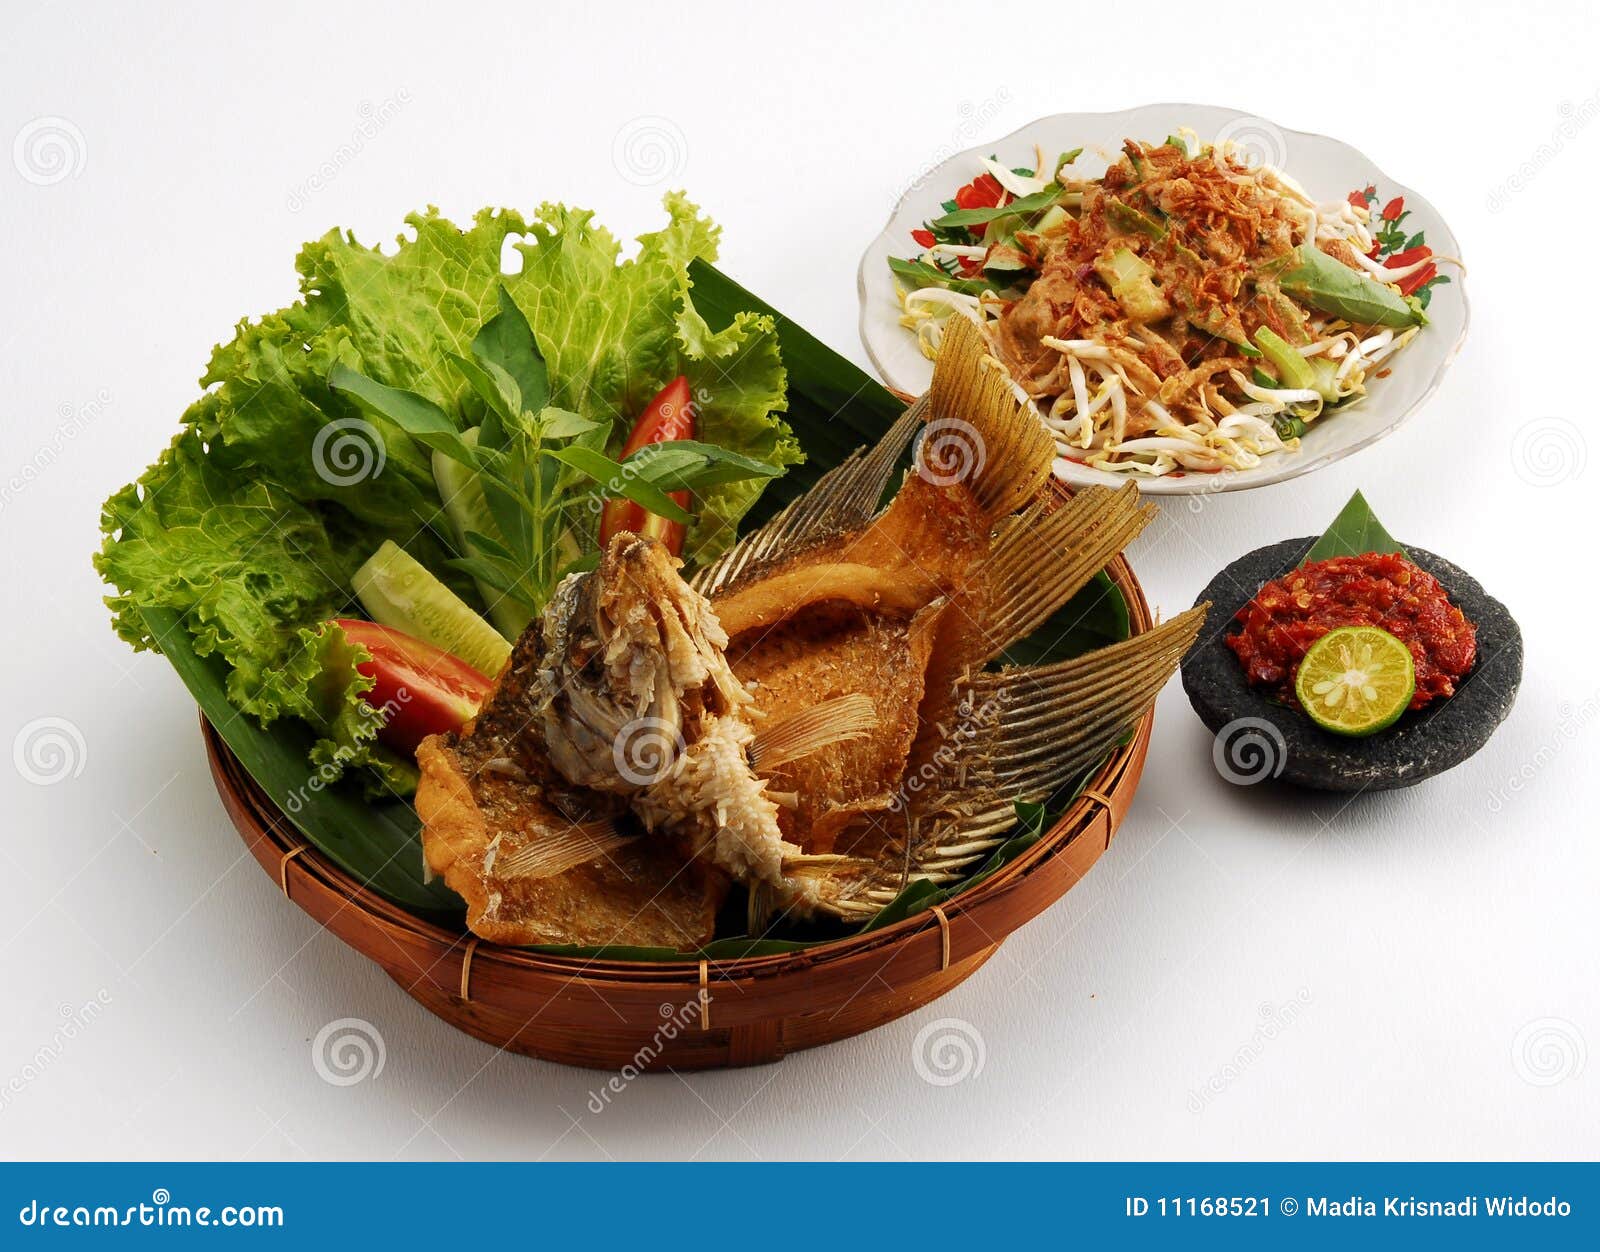 Refeição fritada do gurami. Close up da farinha de peixes fritada do gurami com saladas laterais, isolado no fundo branco.